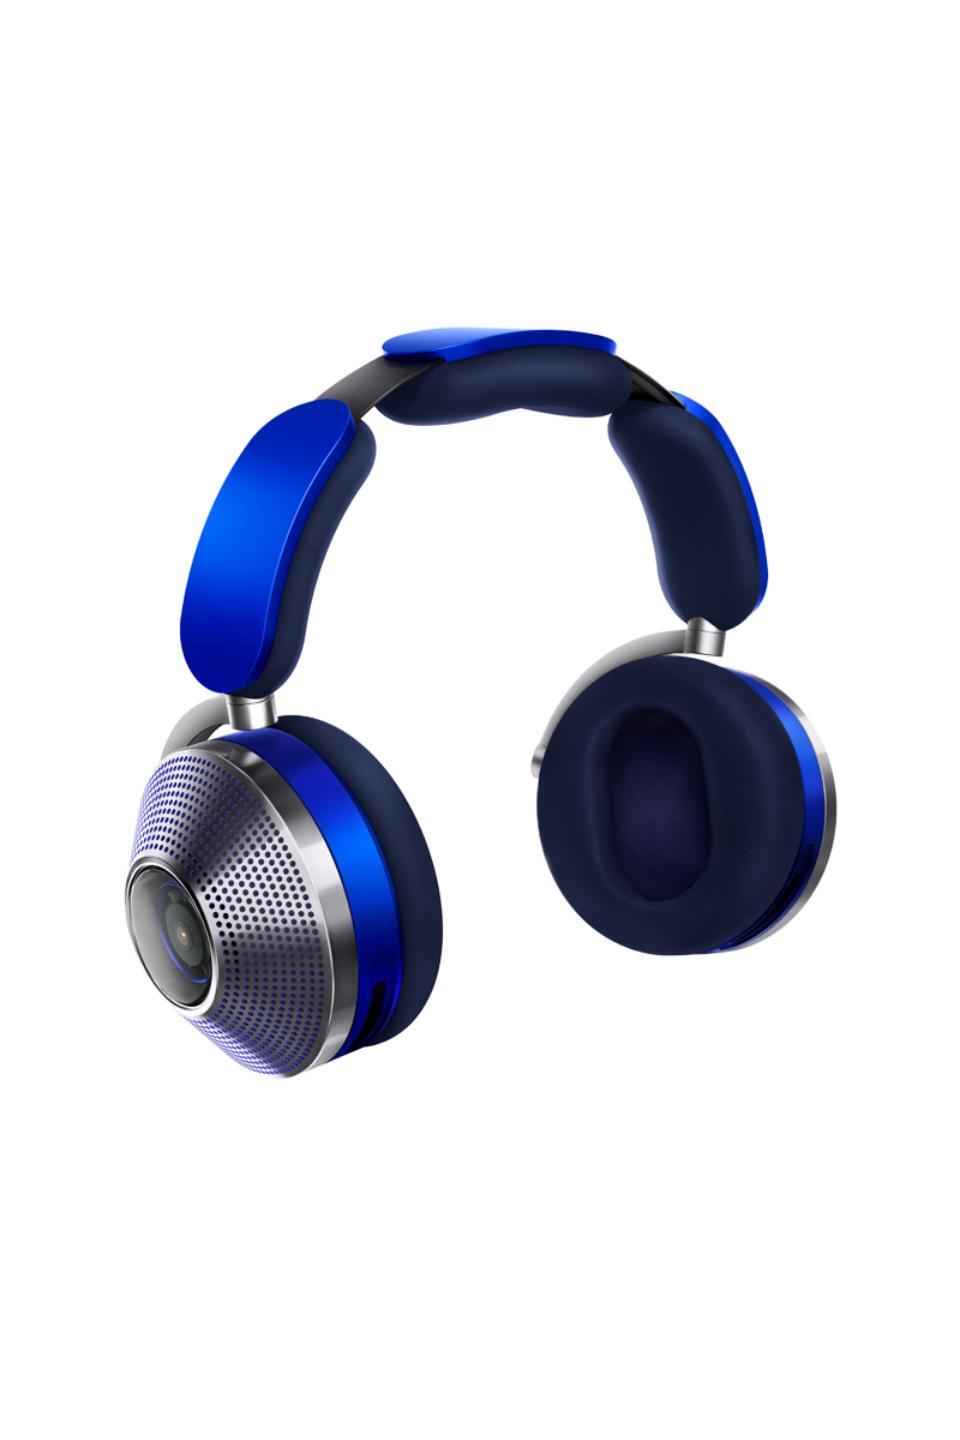 Dyson Zone Trademark  Blue Kopfhorer mit aktiver Gerauschunterdruckung 60005140 + FL50-525BL1 (5025155055632) austiņas